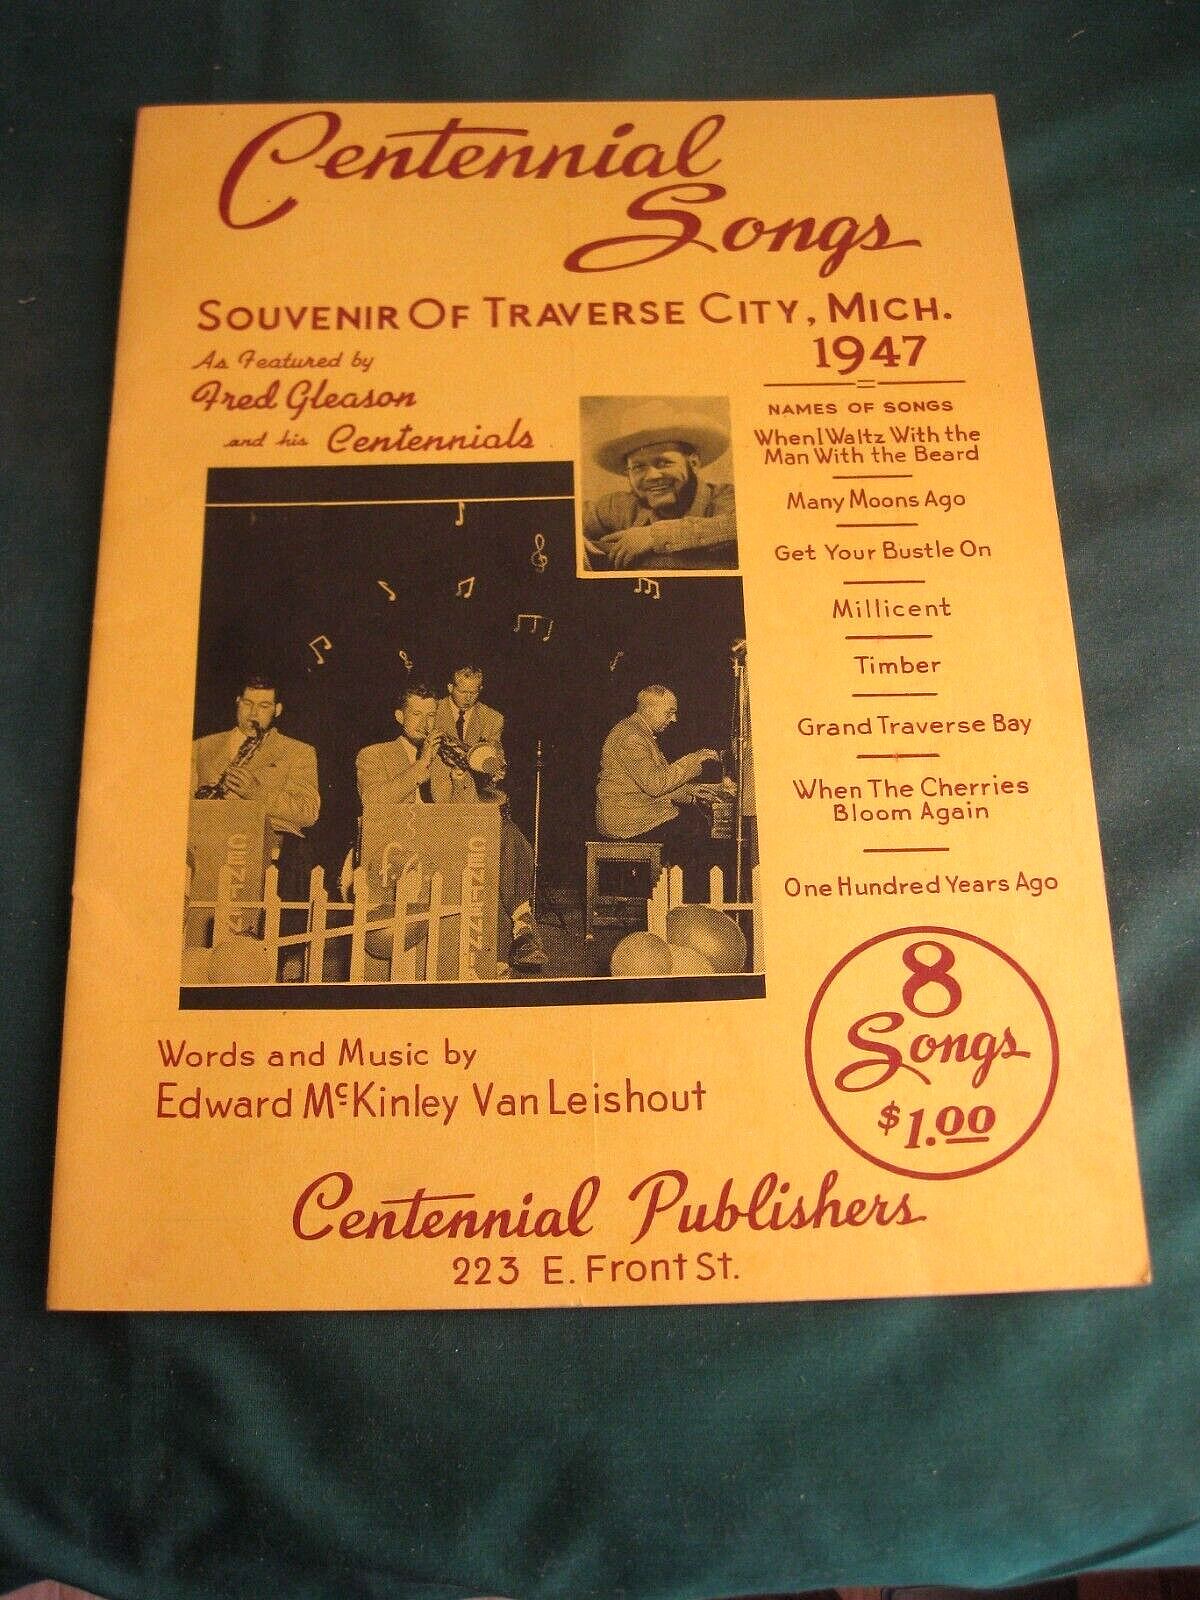 VTG ORIGINAL CENTENNIAL SONGS SOUVENIER OF TRAVERSE CITY MICH 1947~AS FOUND,NICE